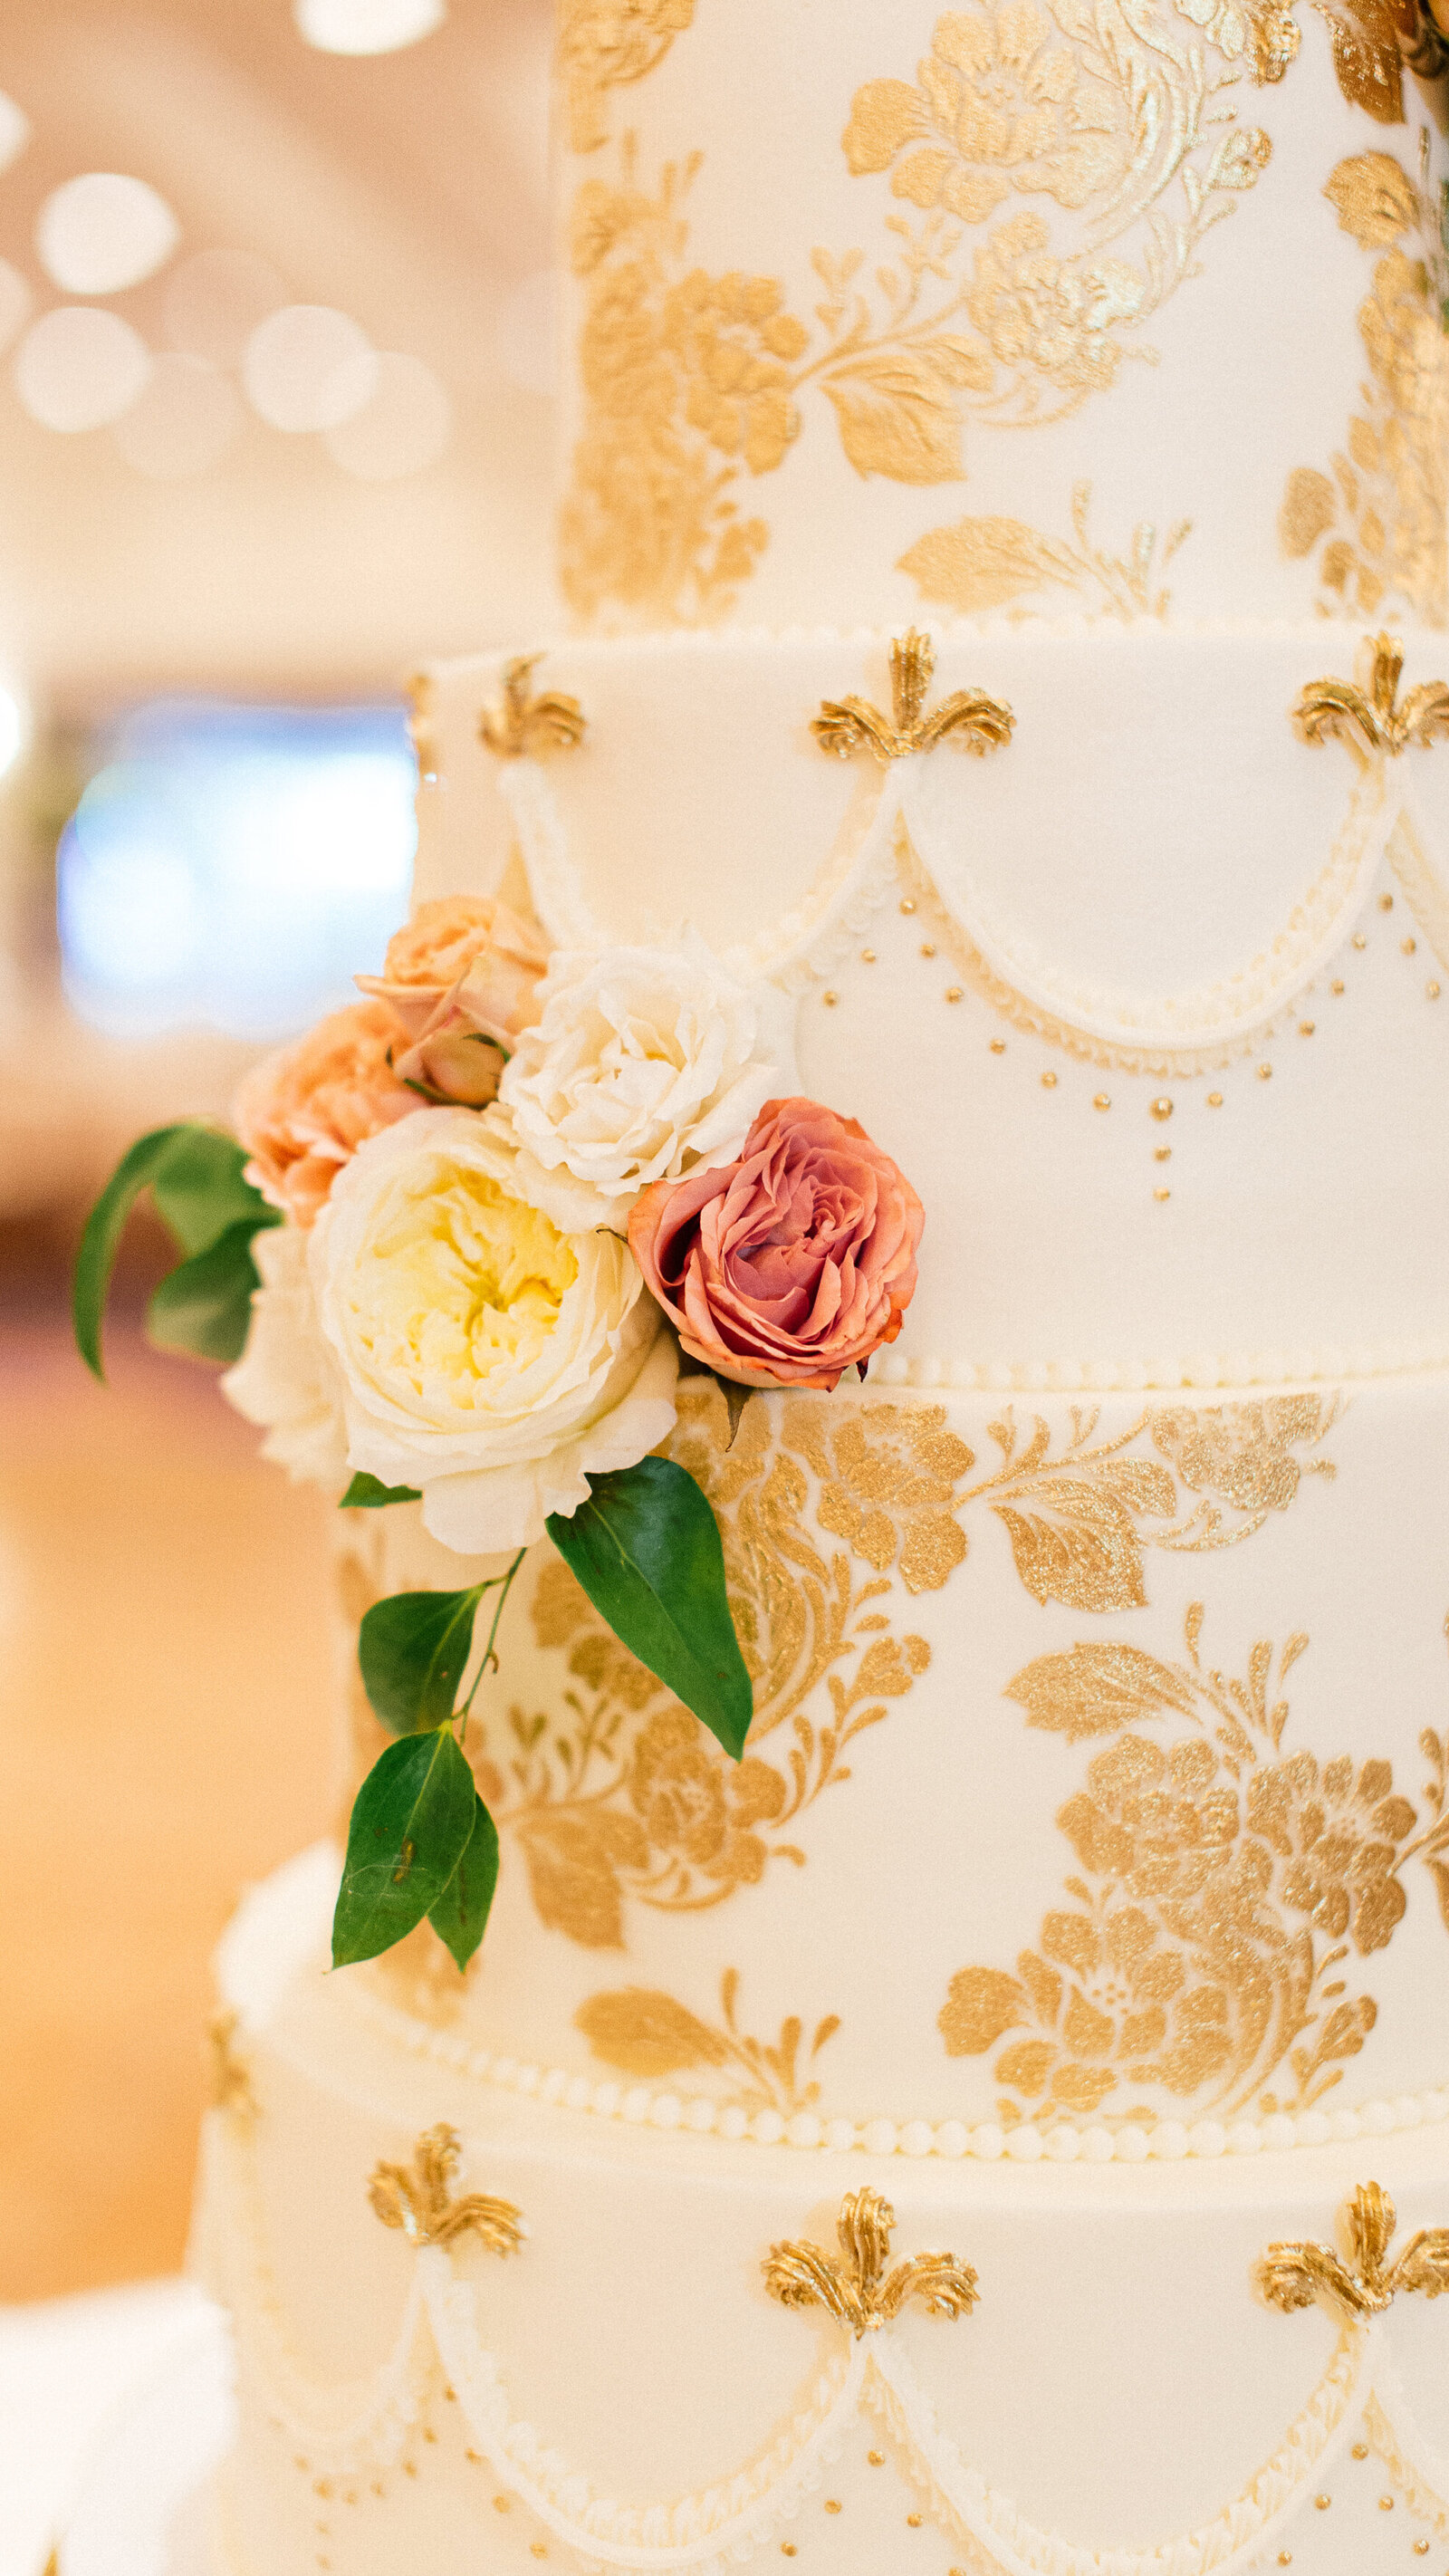 Glamorous-Wedding-Cake-Ashley-Cakes-4